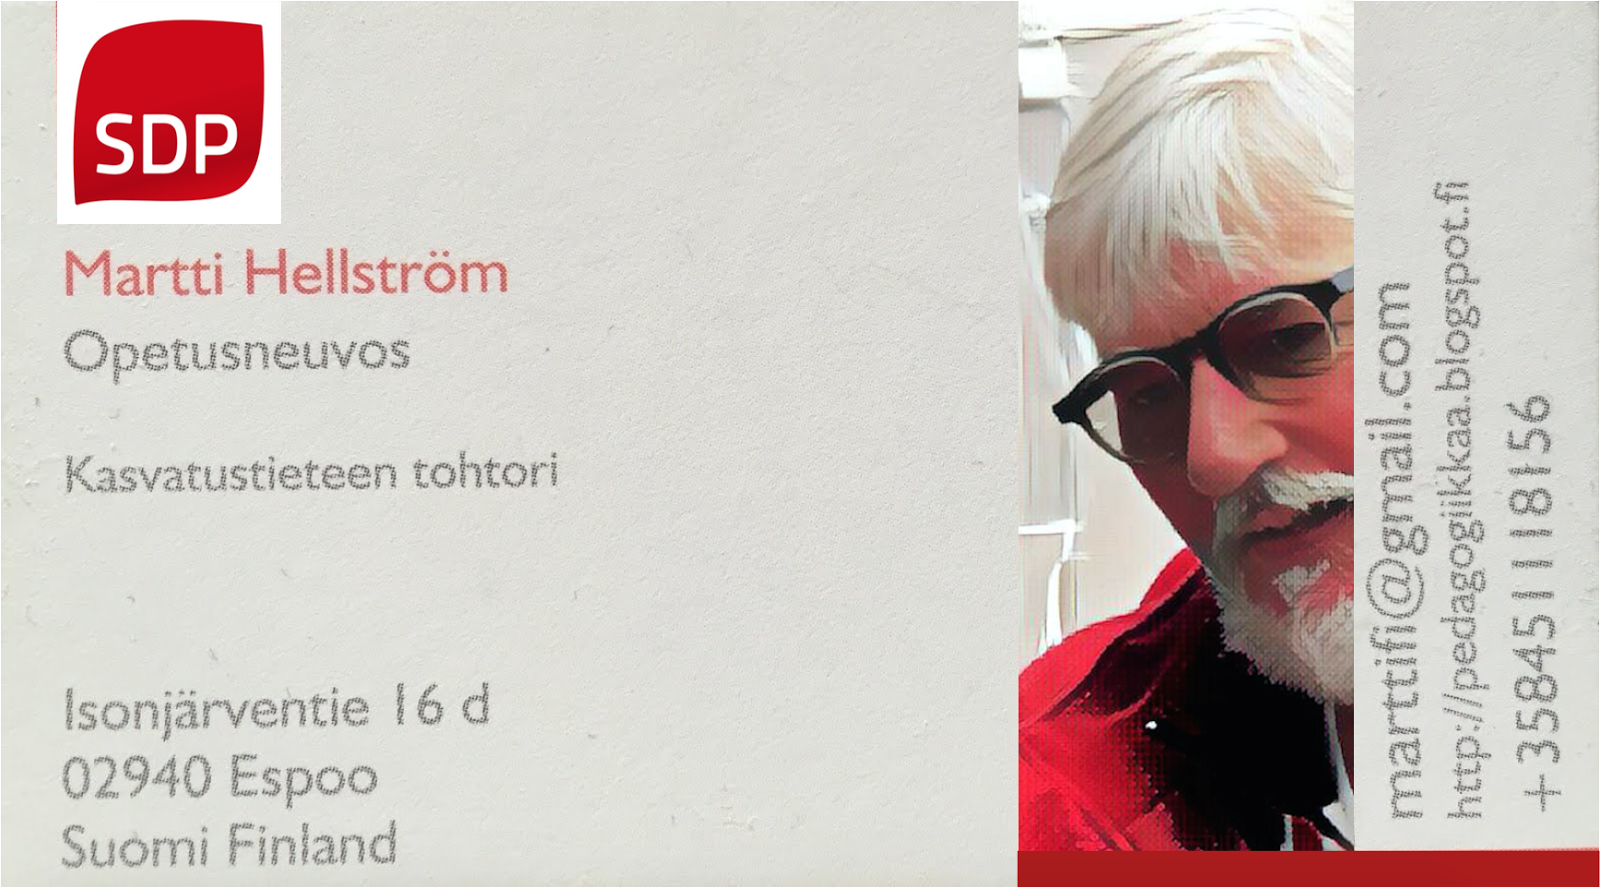 Martti Hellström